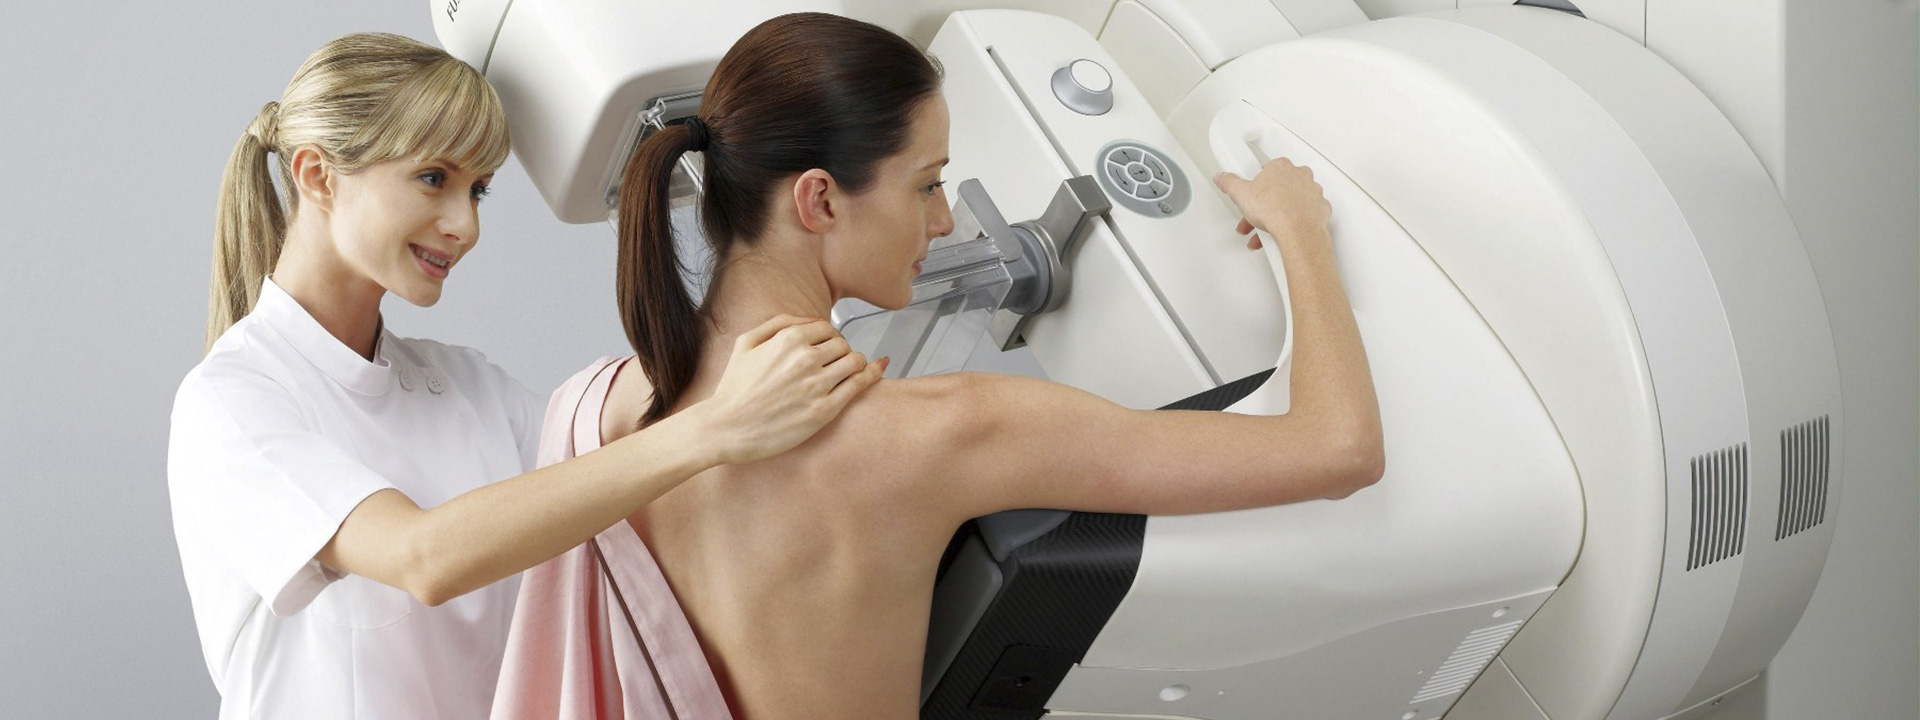 Programa Nacional de Qualidade em Mamografia